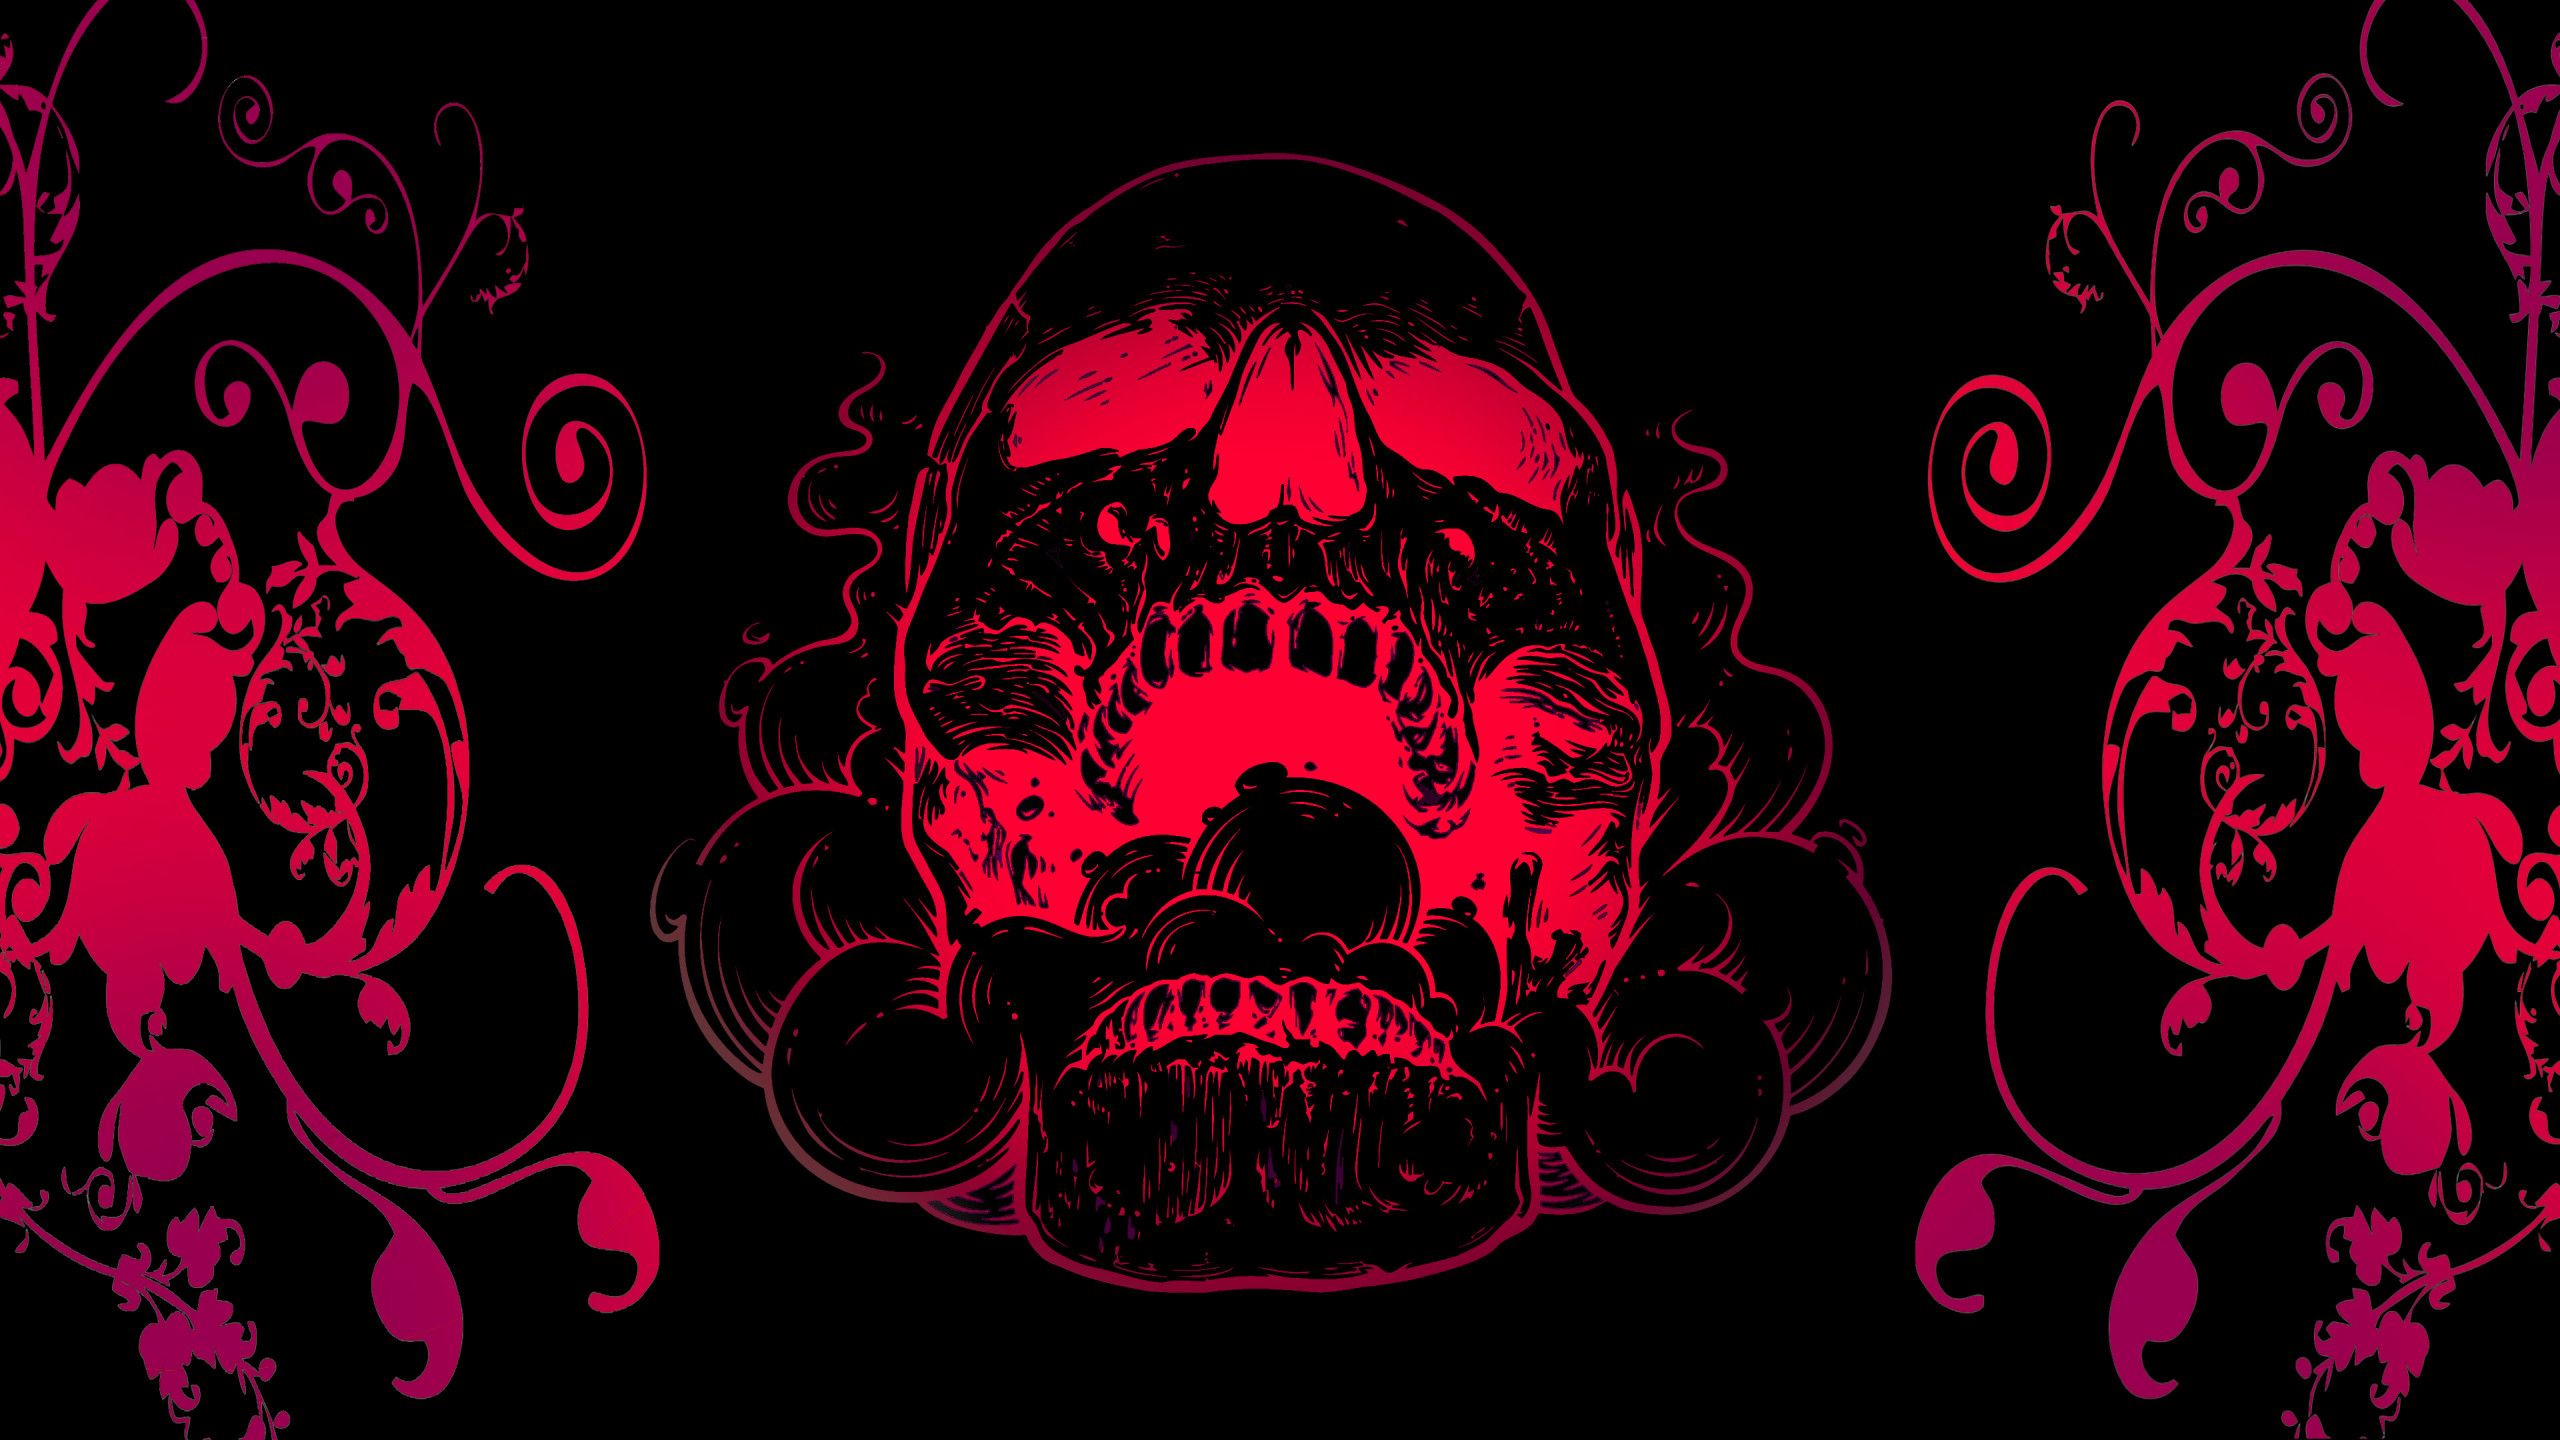 Red Skull Flowers Black Background 4k 1440P Resolution